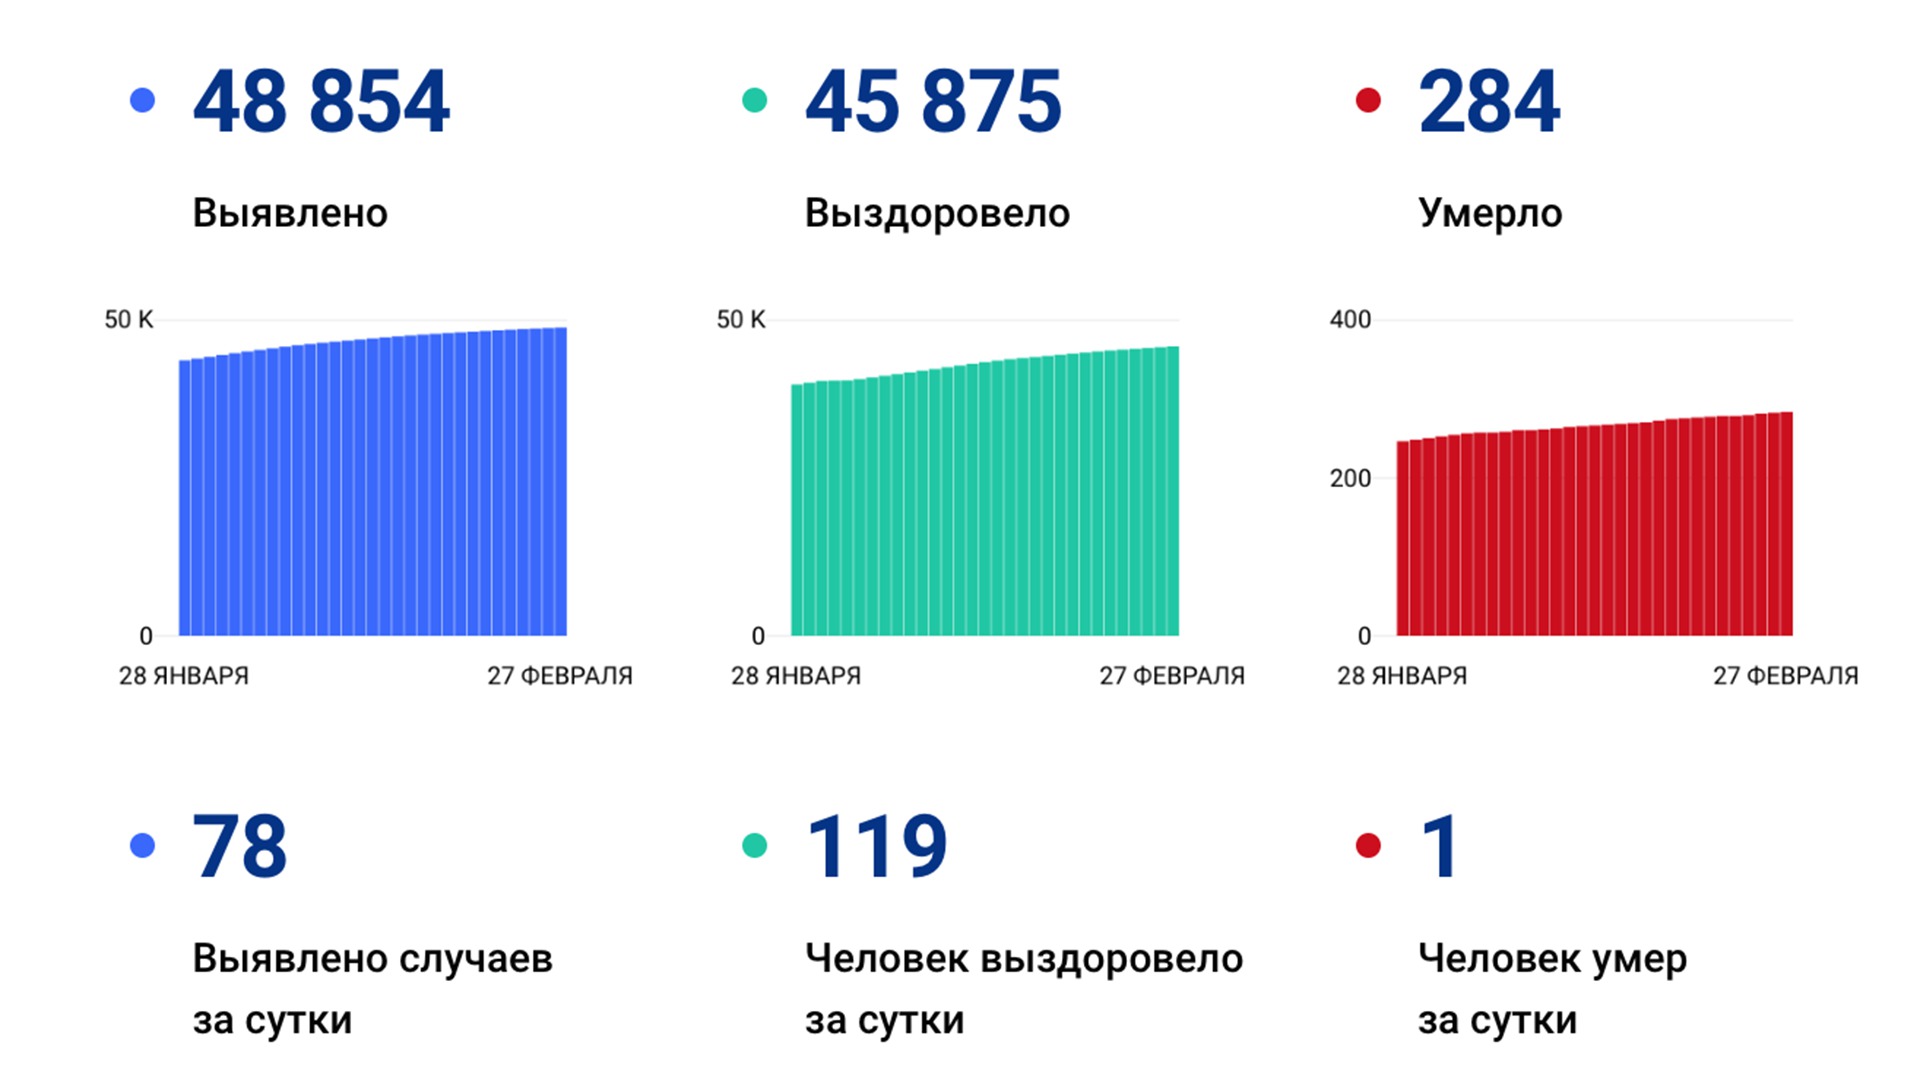 78 случаев коронавируса выявлено за сутки в Хабаровском крае